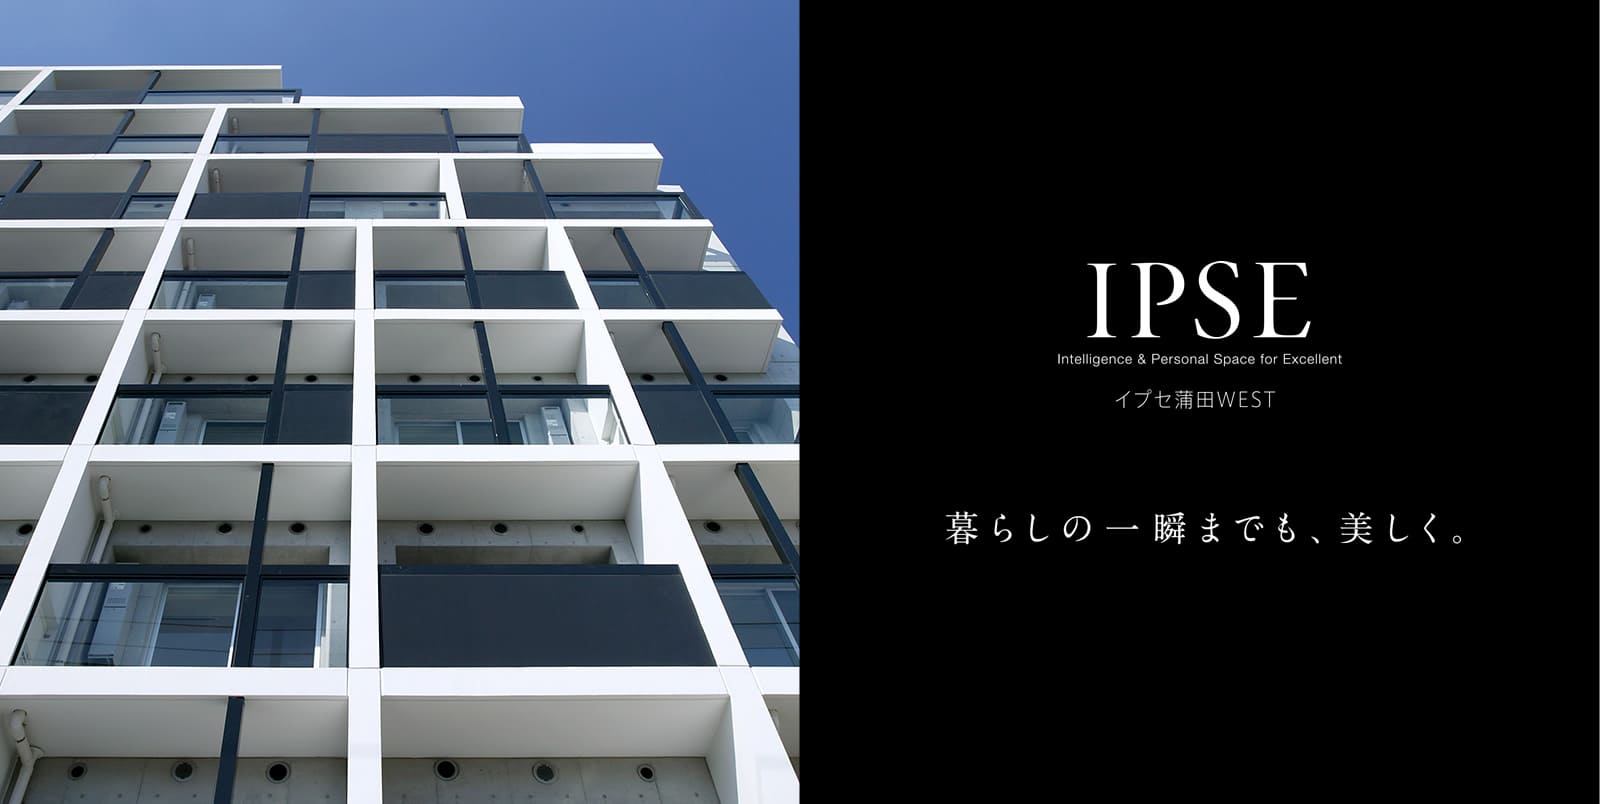 イプセ蒲田WEST IPSE Intelligence & Personal Space for Excellent 暮らしの一瞬までも、美しく